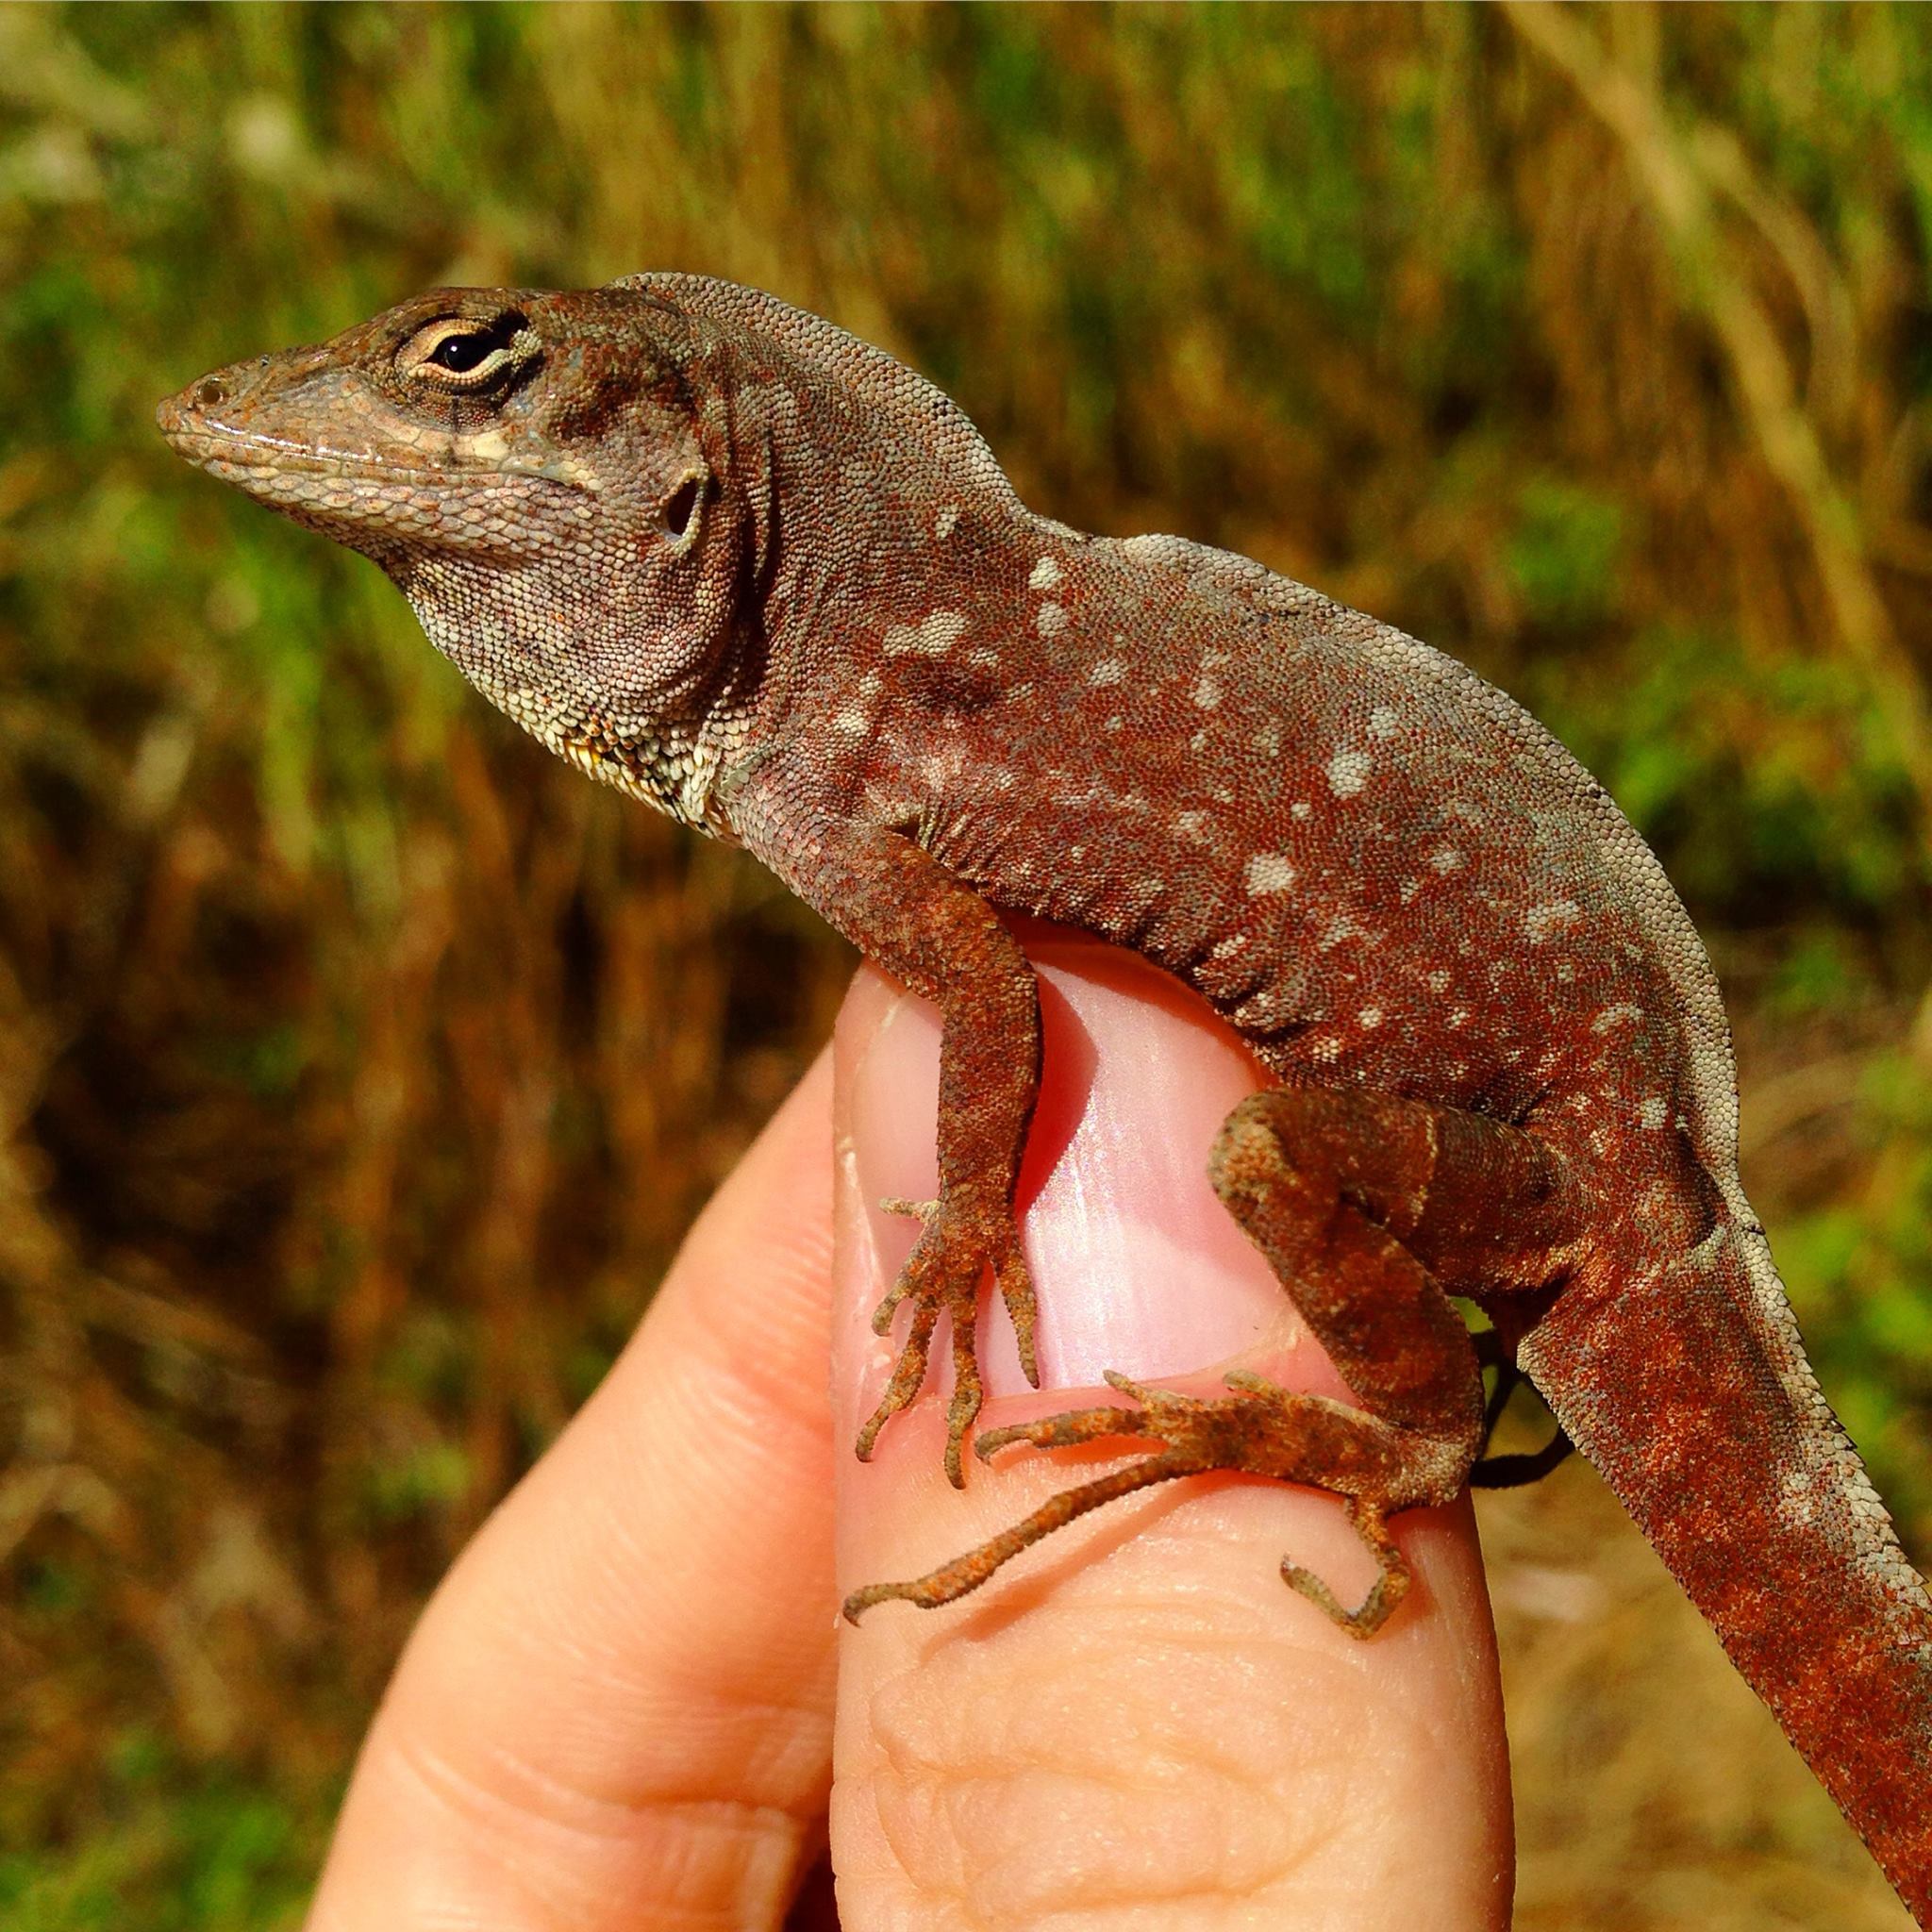 Invasive lizard takes up residence in Bermuda